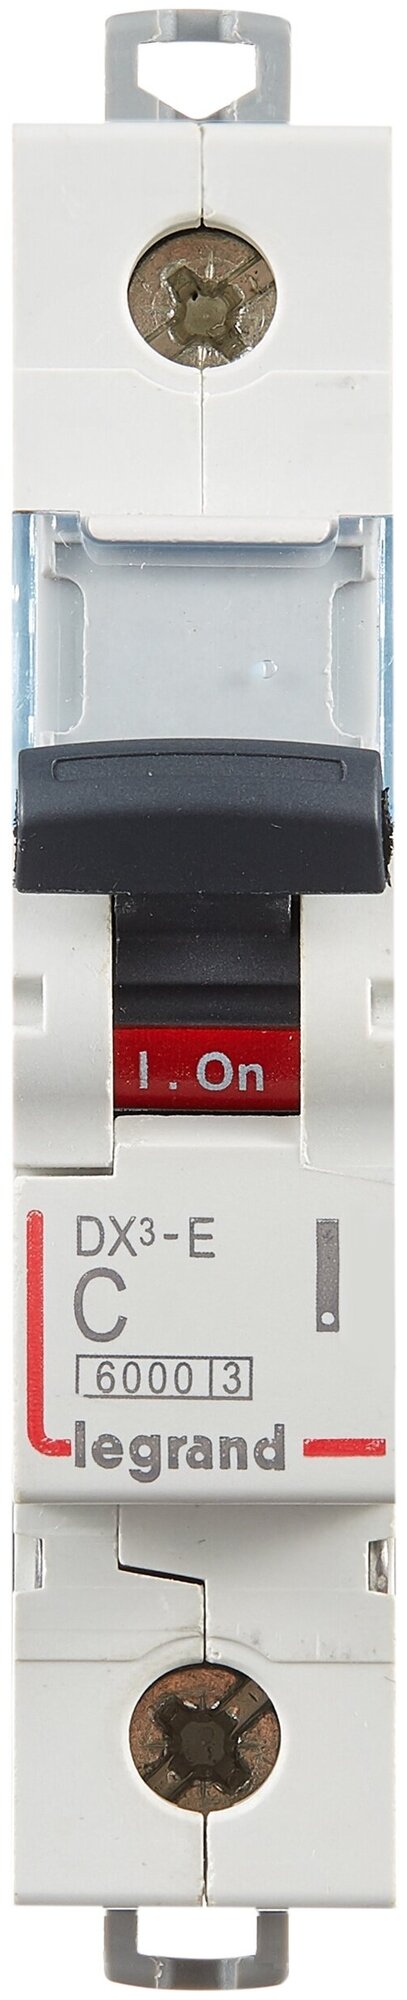 DX3-E 407256 Автоматический выключатель однополюсный 1А (6 кА, C) Legrand - фото №2